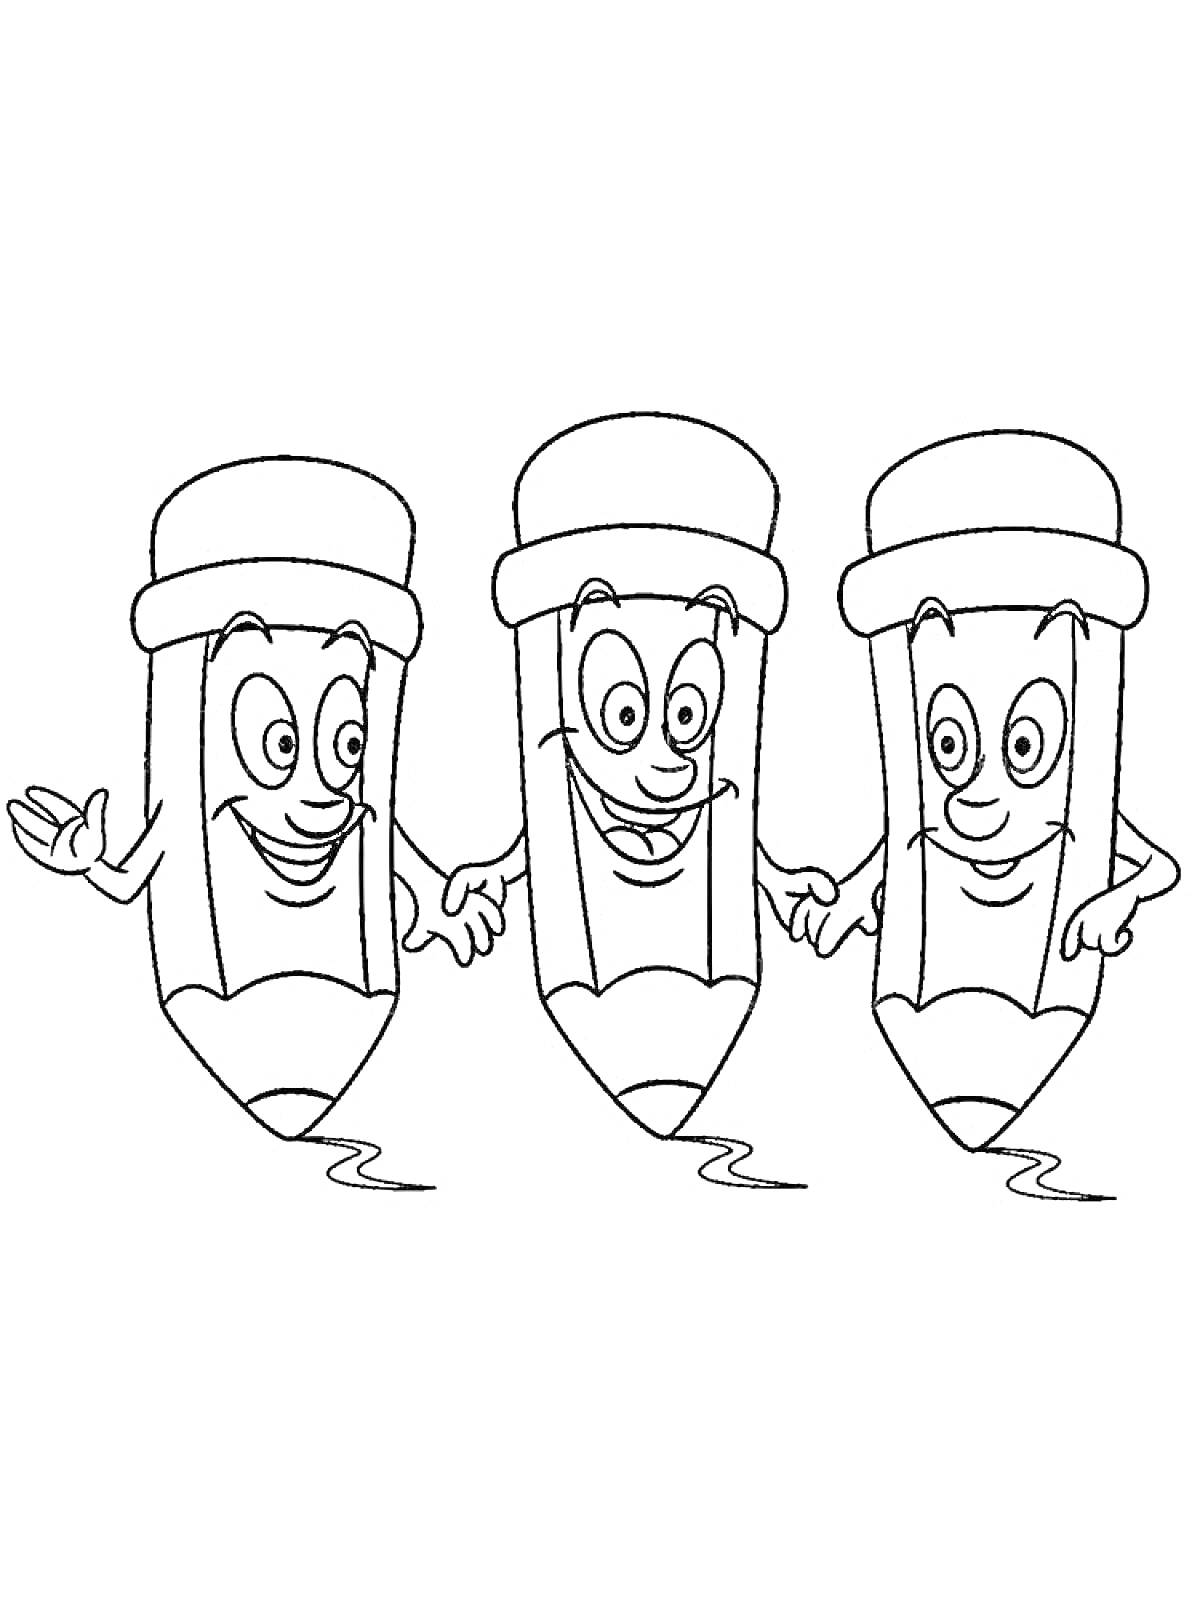 Раскраска Три улыбчивых карандаша с глазами и руками, стоящие в ряд, с держанием за руки.